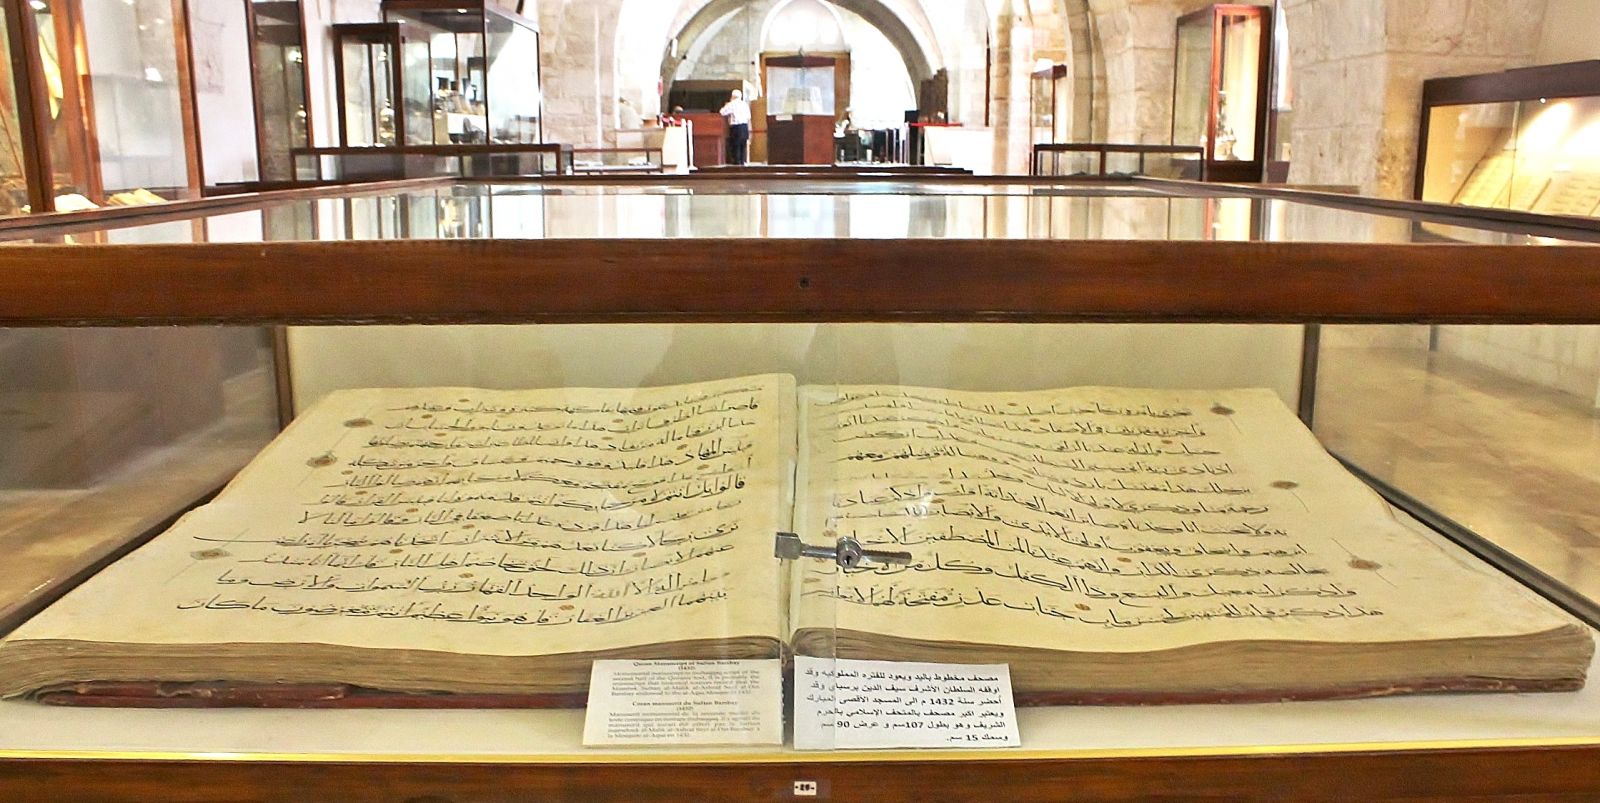 المتحف الإسلامي في الحرم القدسي الشريف